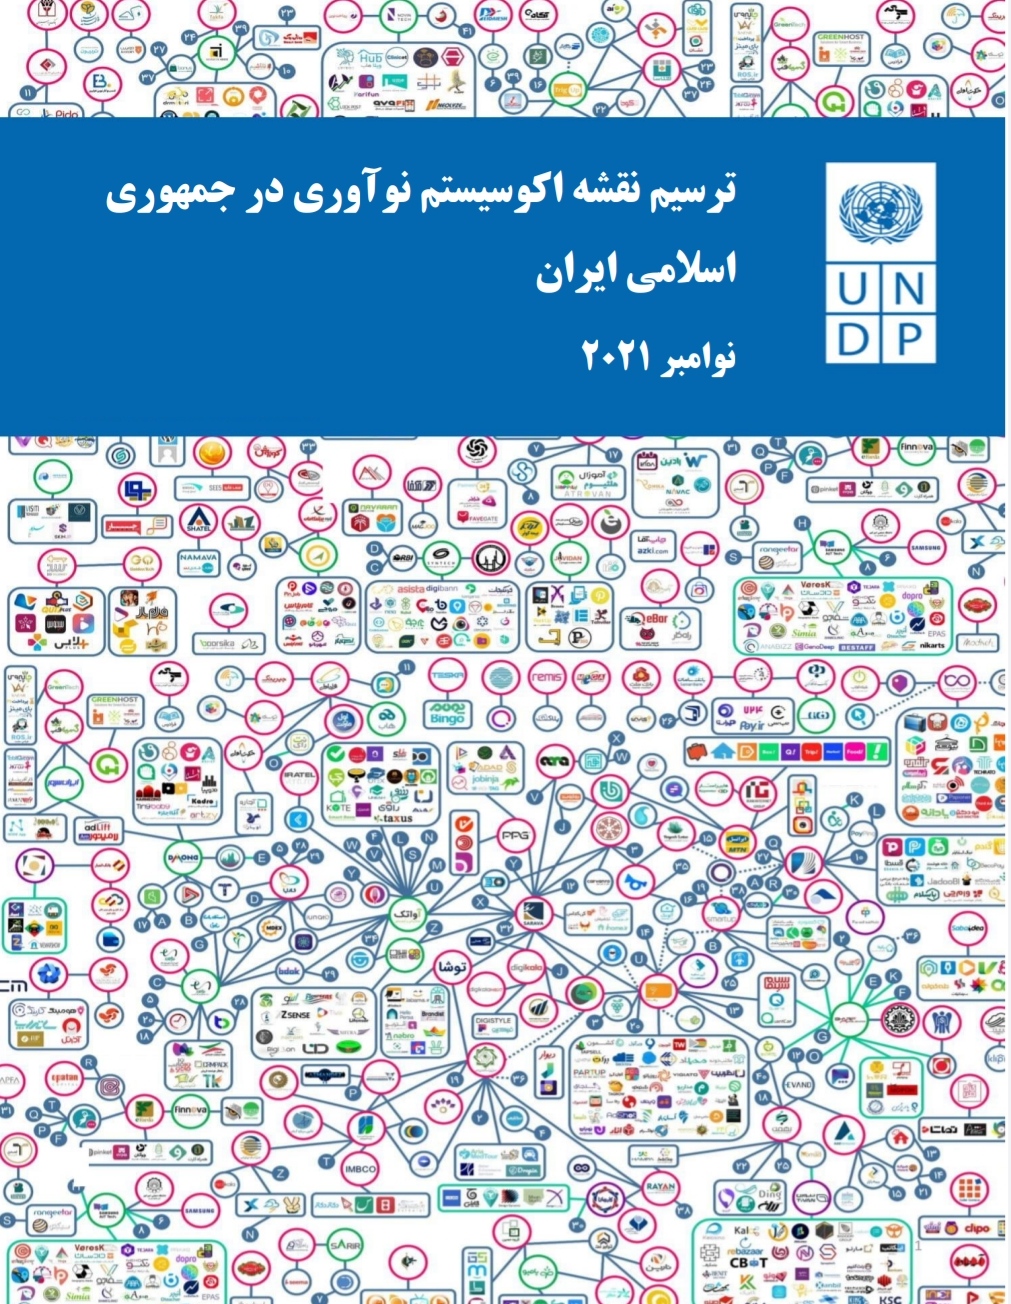 نقشه اکوسیستم نوآوری در جمهوری اسلامی ایران